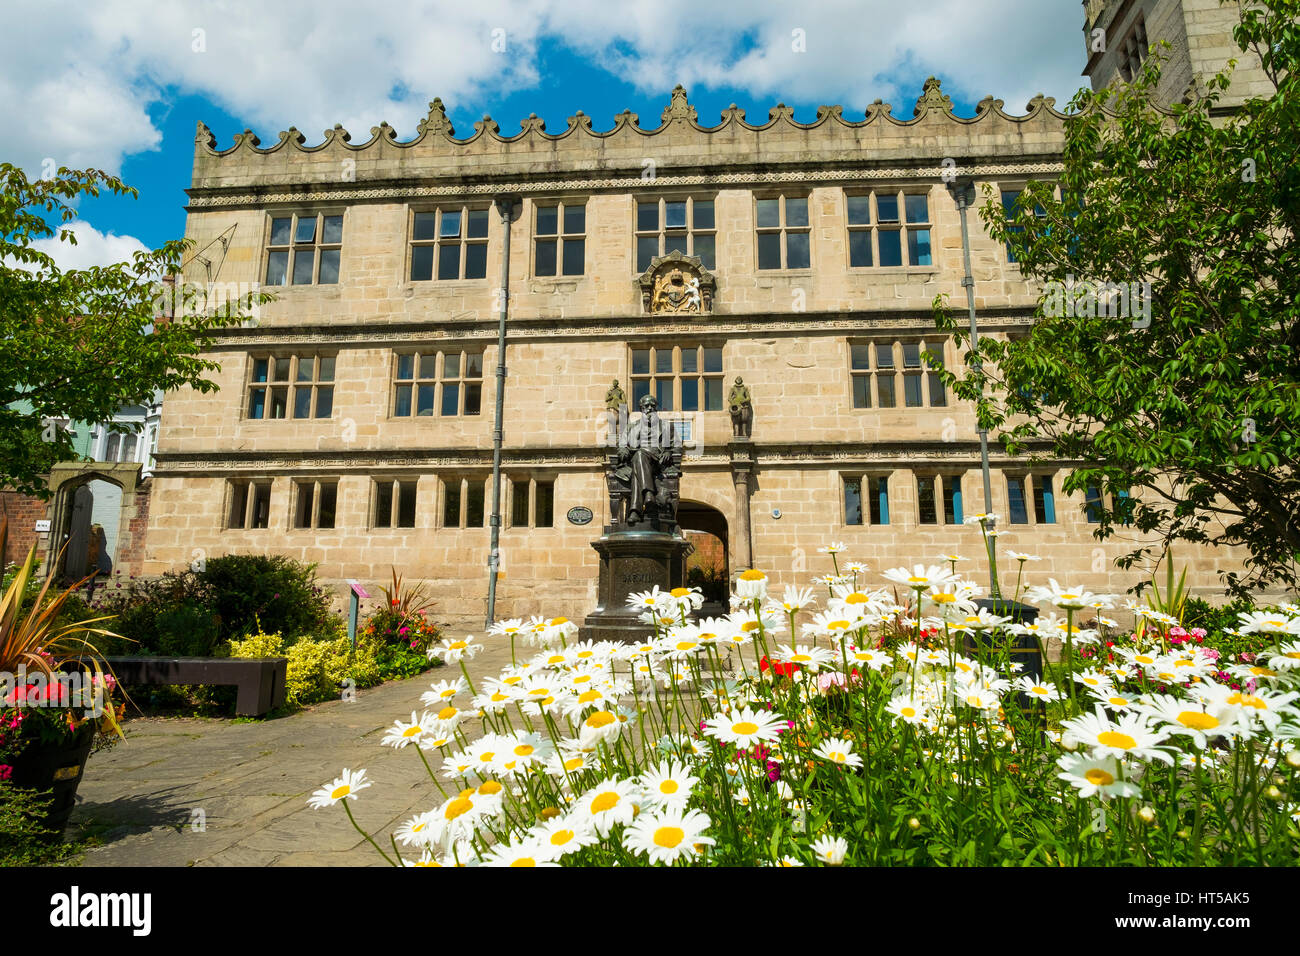 Fleurs d'été en fleurs en face de la bibliothèque de Shrewsbury et Charles Darwin statue, Shropshire, Angleterre, Royaume-Uni Banque D'Images